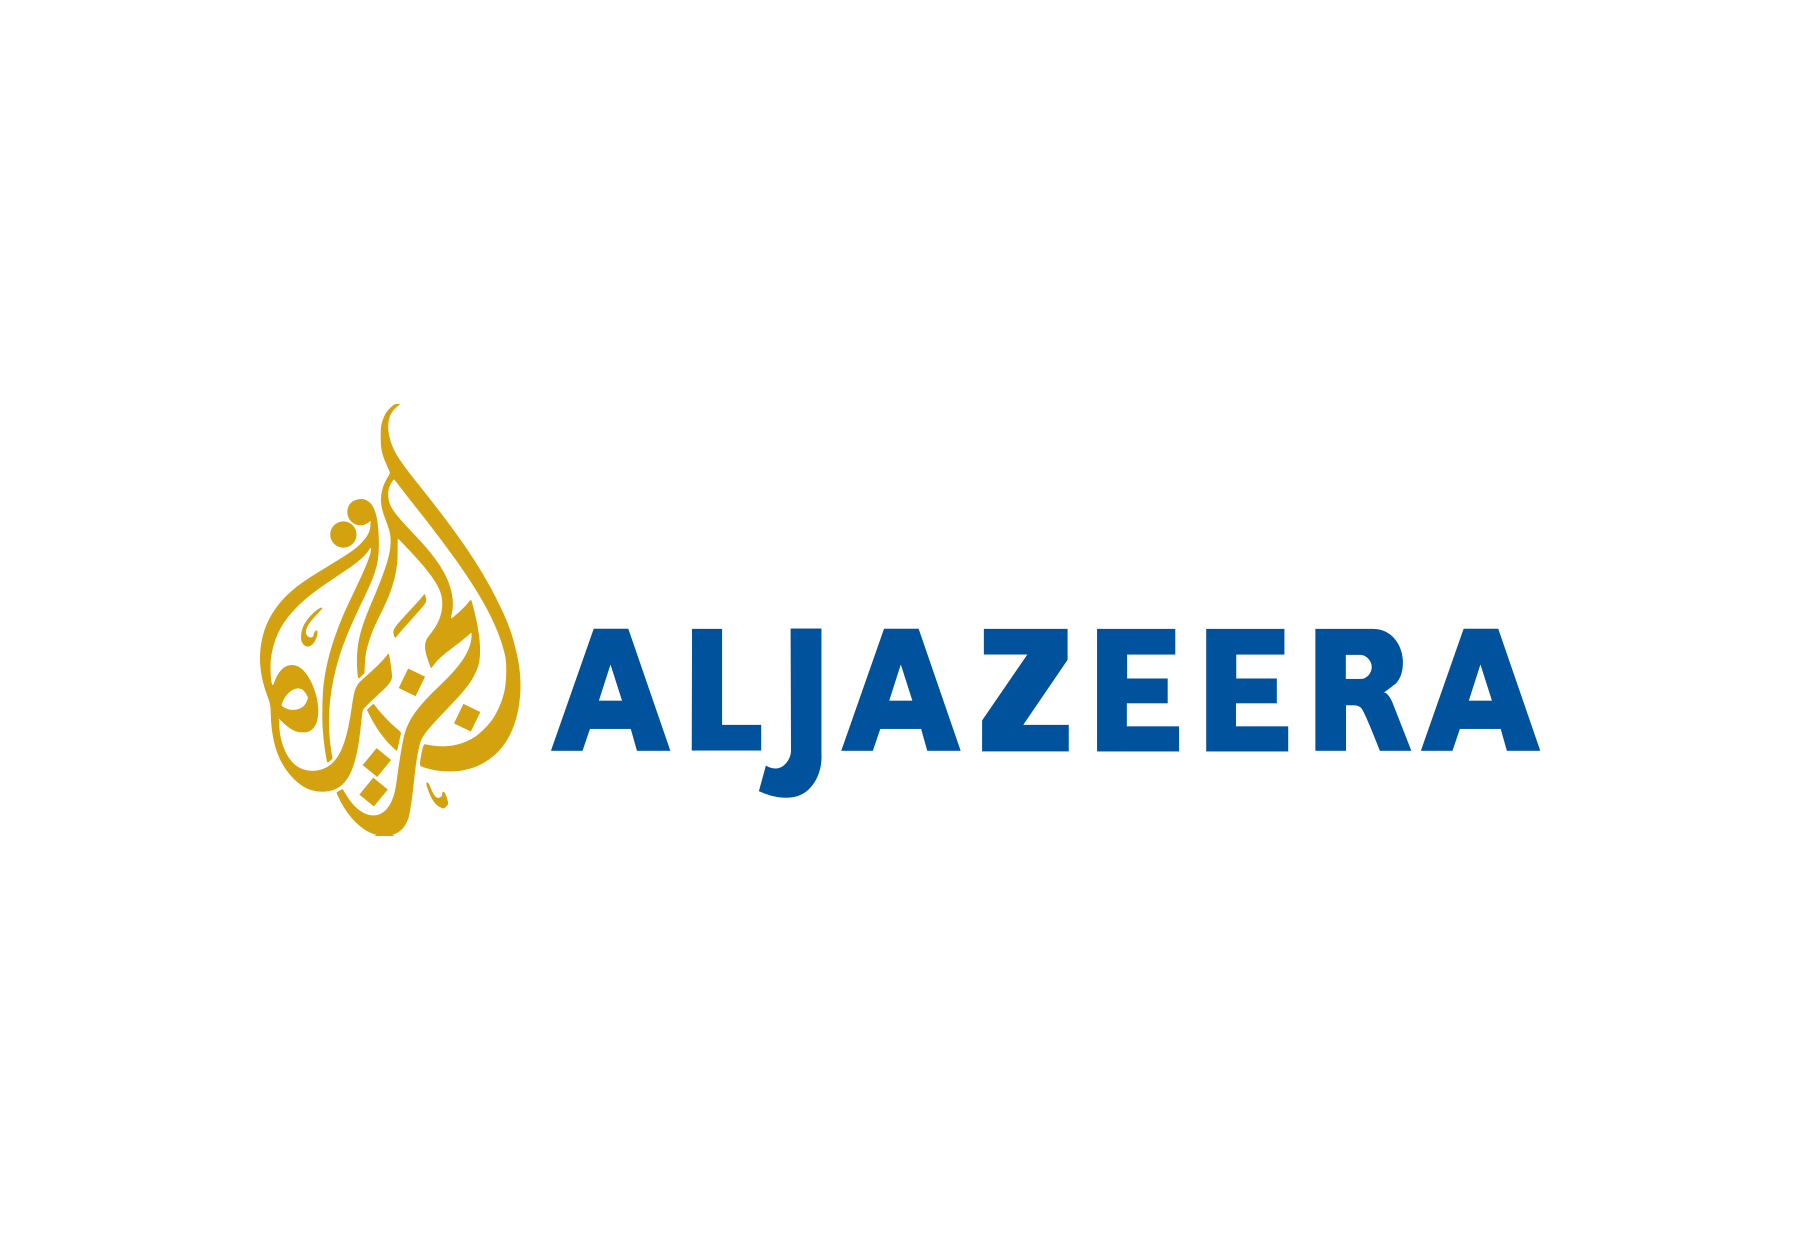 Al Jazeera Documentary Channe